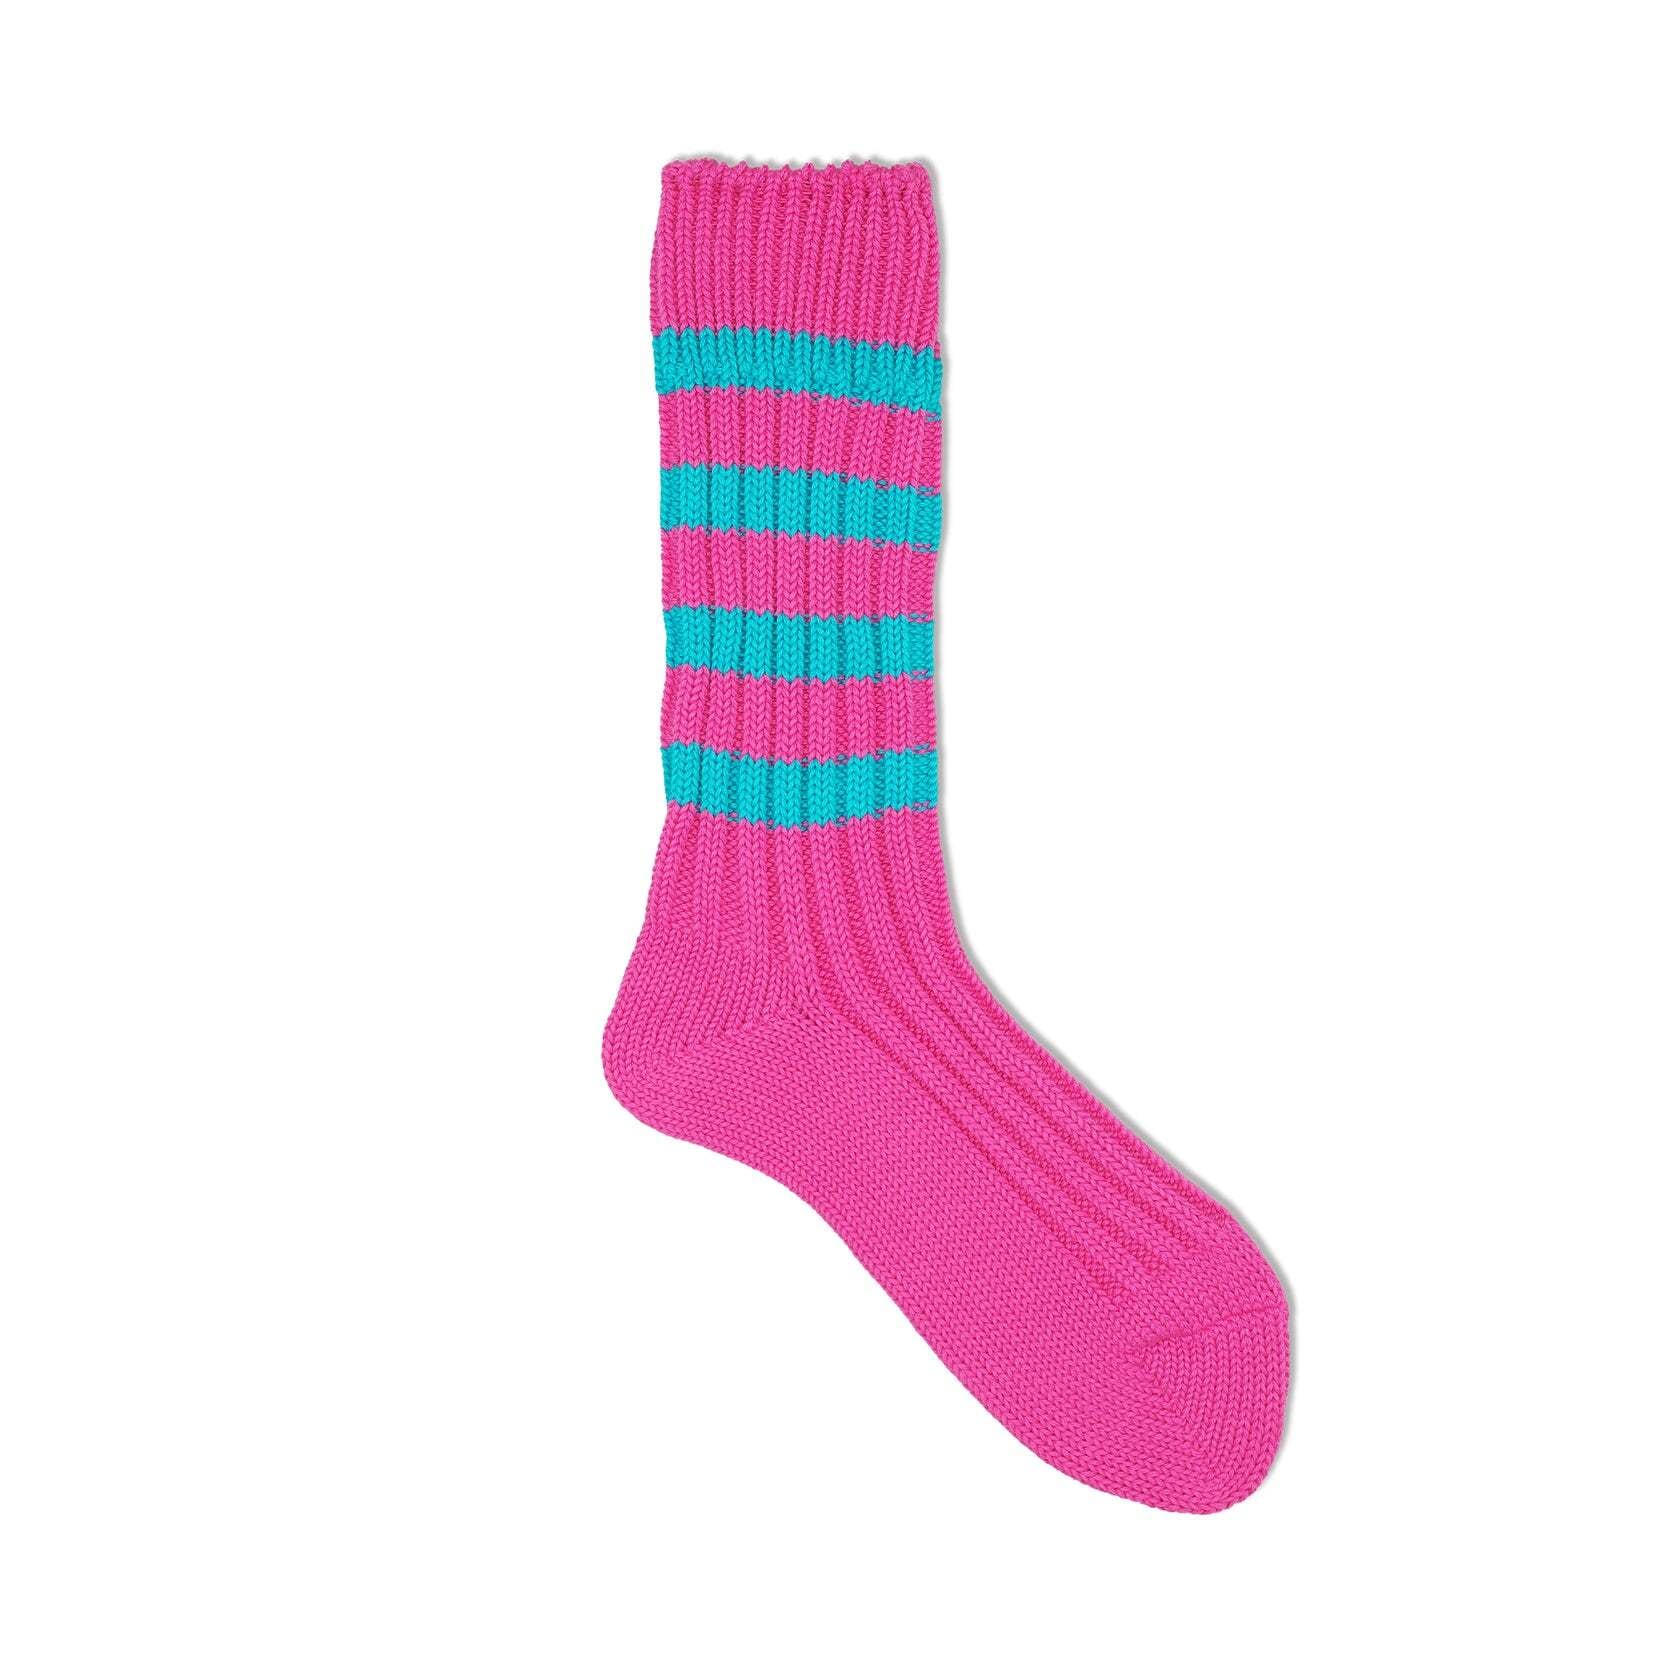 decka】Heavyweight Socks Stripes Crazy Color (3colors) de-29-2 dros dro